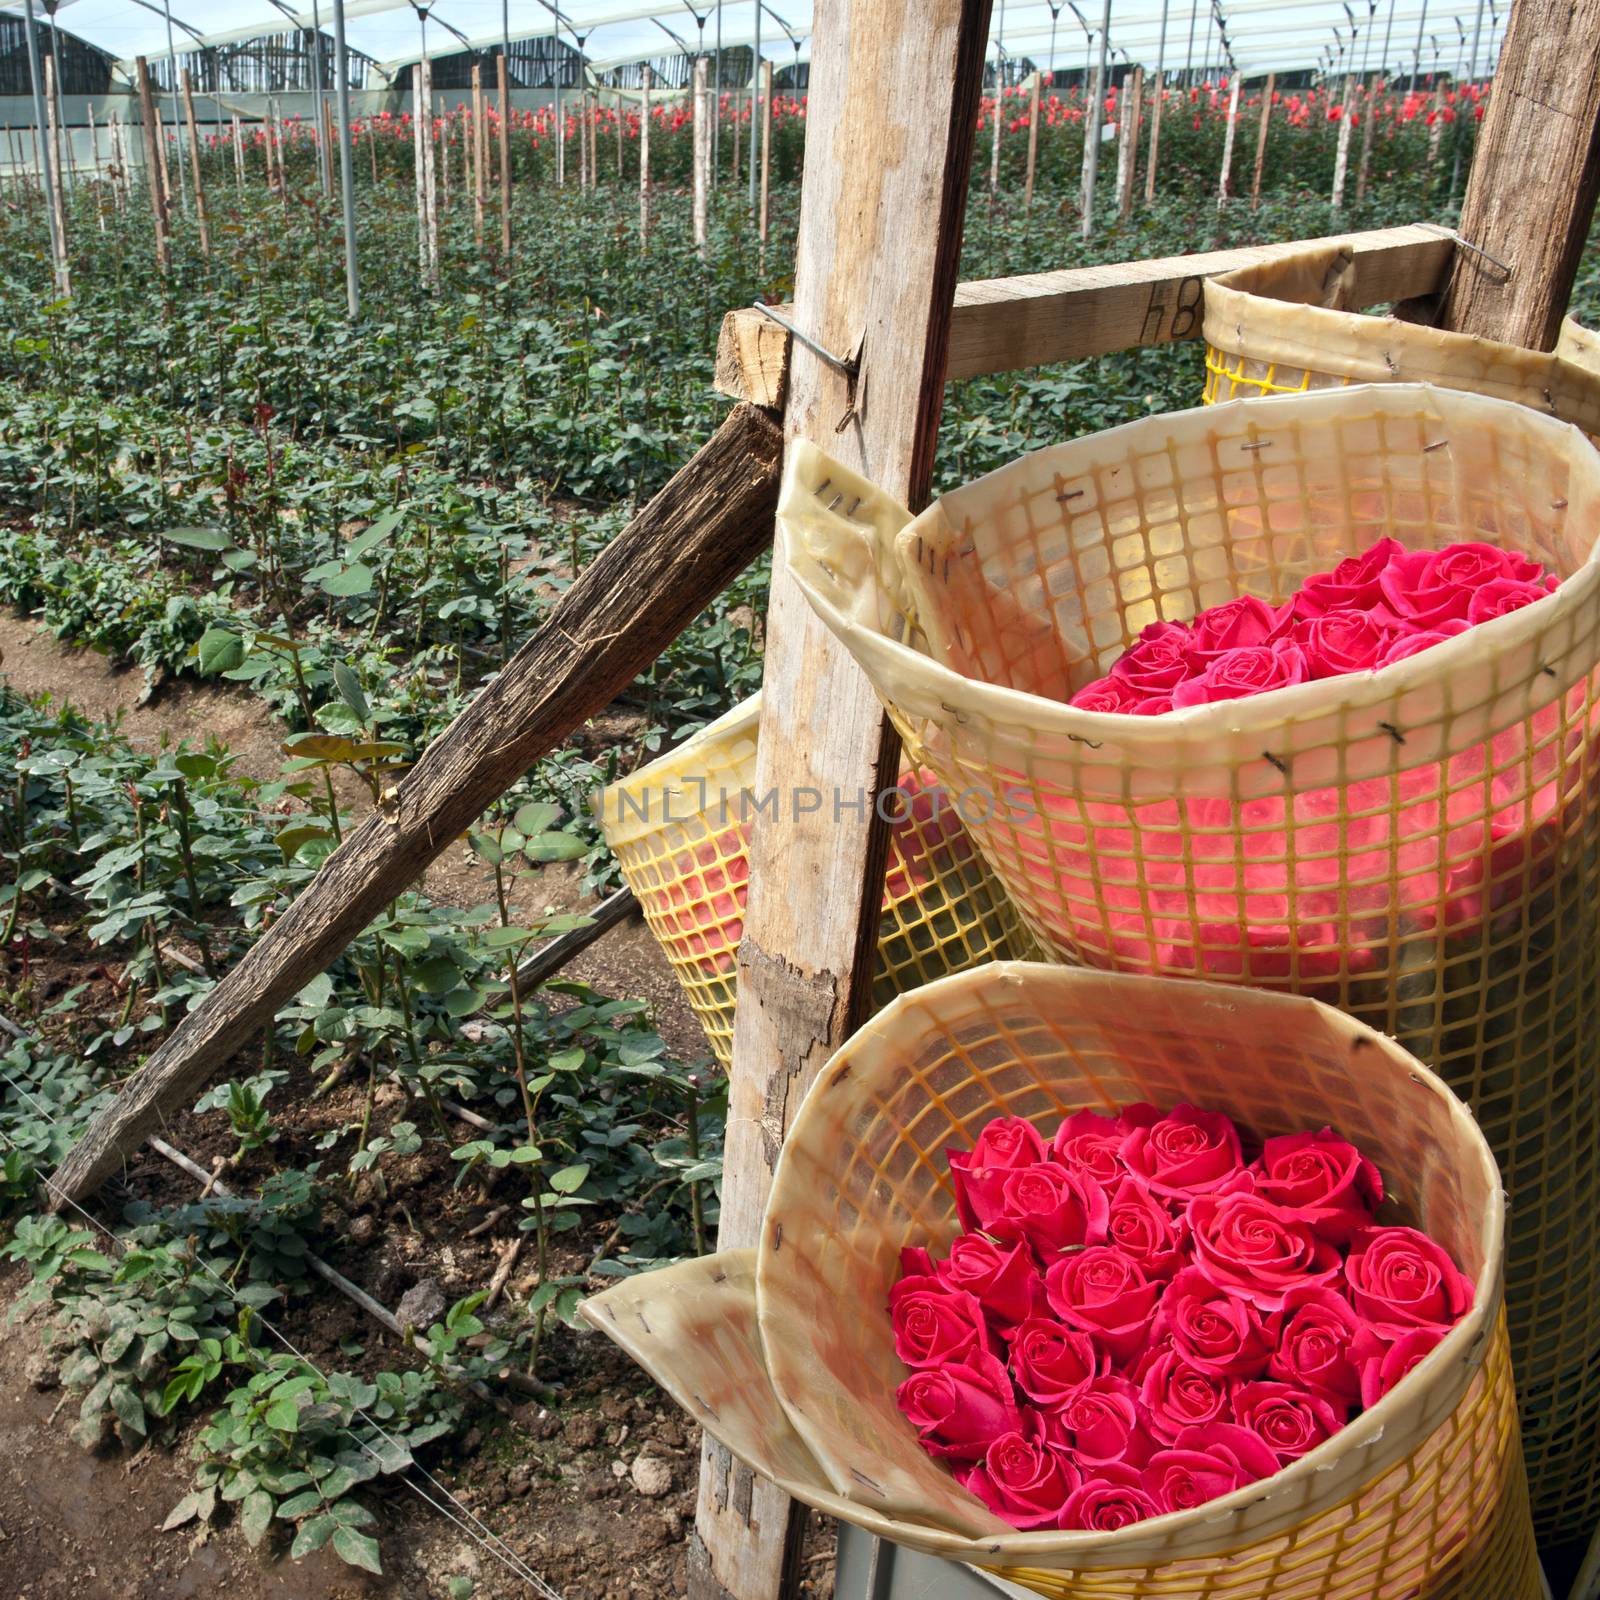 Roses Harvest, plantation in Tumbaco, Cayambe, Ecuador by xura